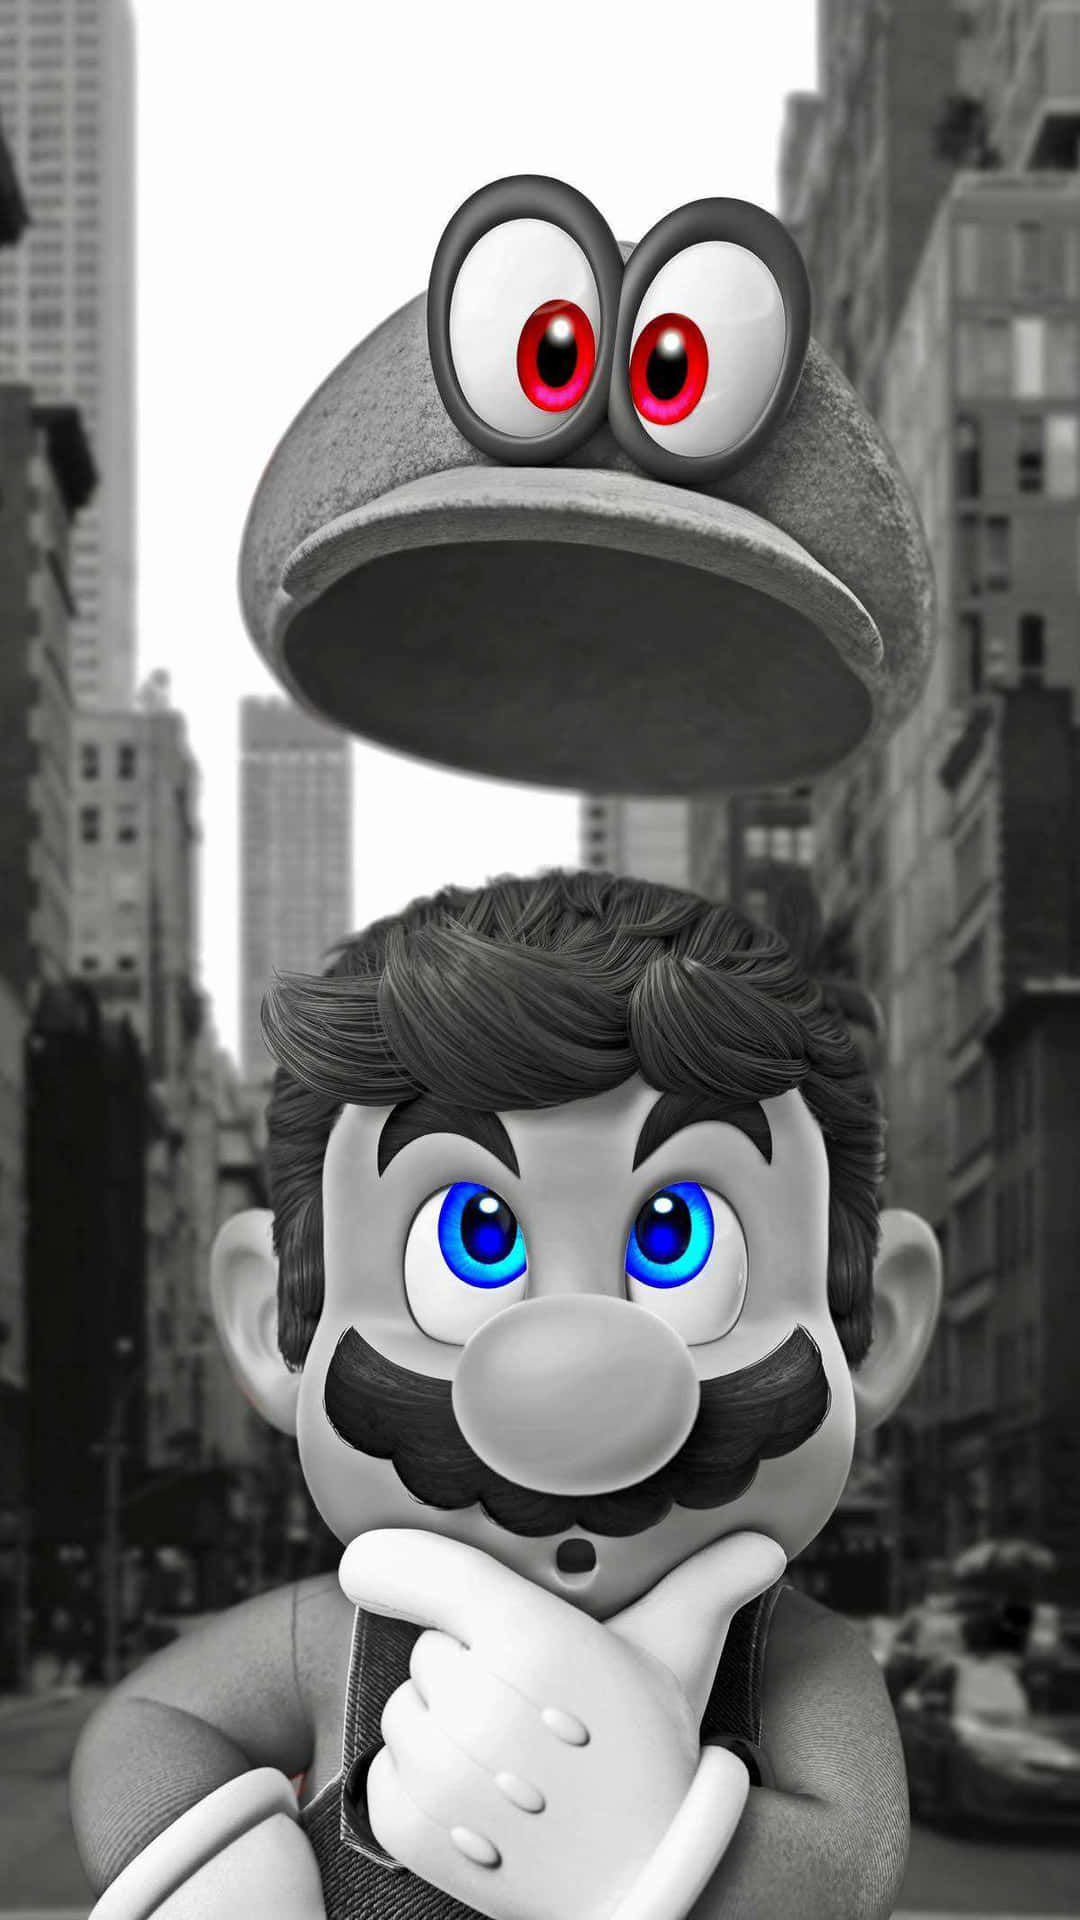 Upplevden Äventyrliga Världen Av Super Mario På Din Iphone Genom Att Välja En Passande Bakgrundsbild. Wallpaper